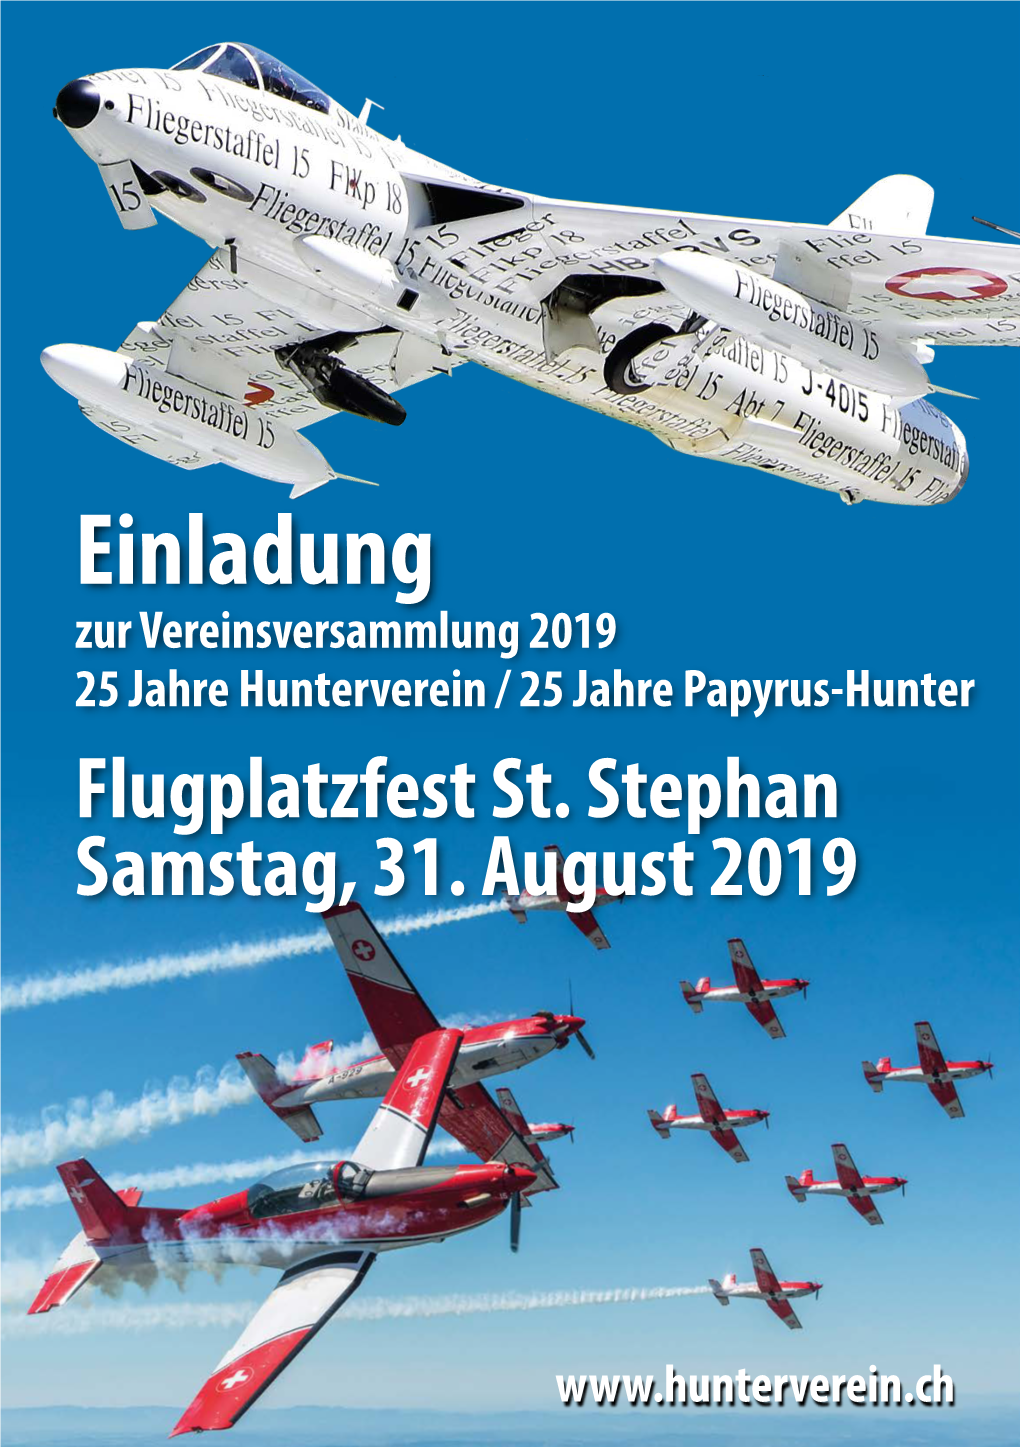 Einladung Zur Vereinsversammlung 2019 25 Jahre Hunterverein / 25 Jahre Papyrus-Hunter Flugplatzfest St